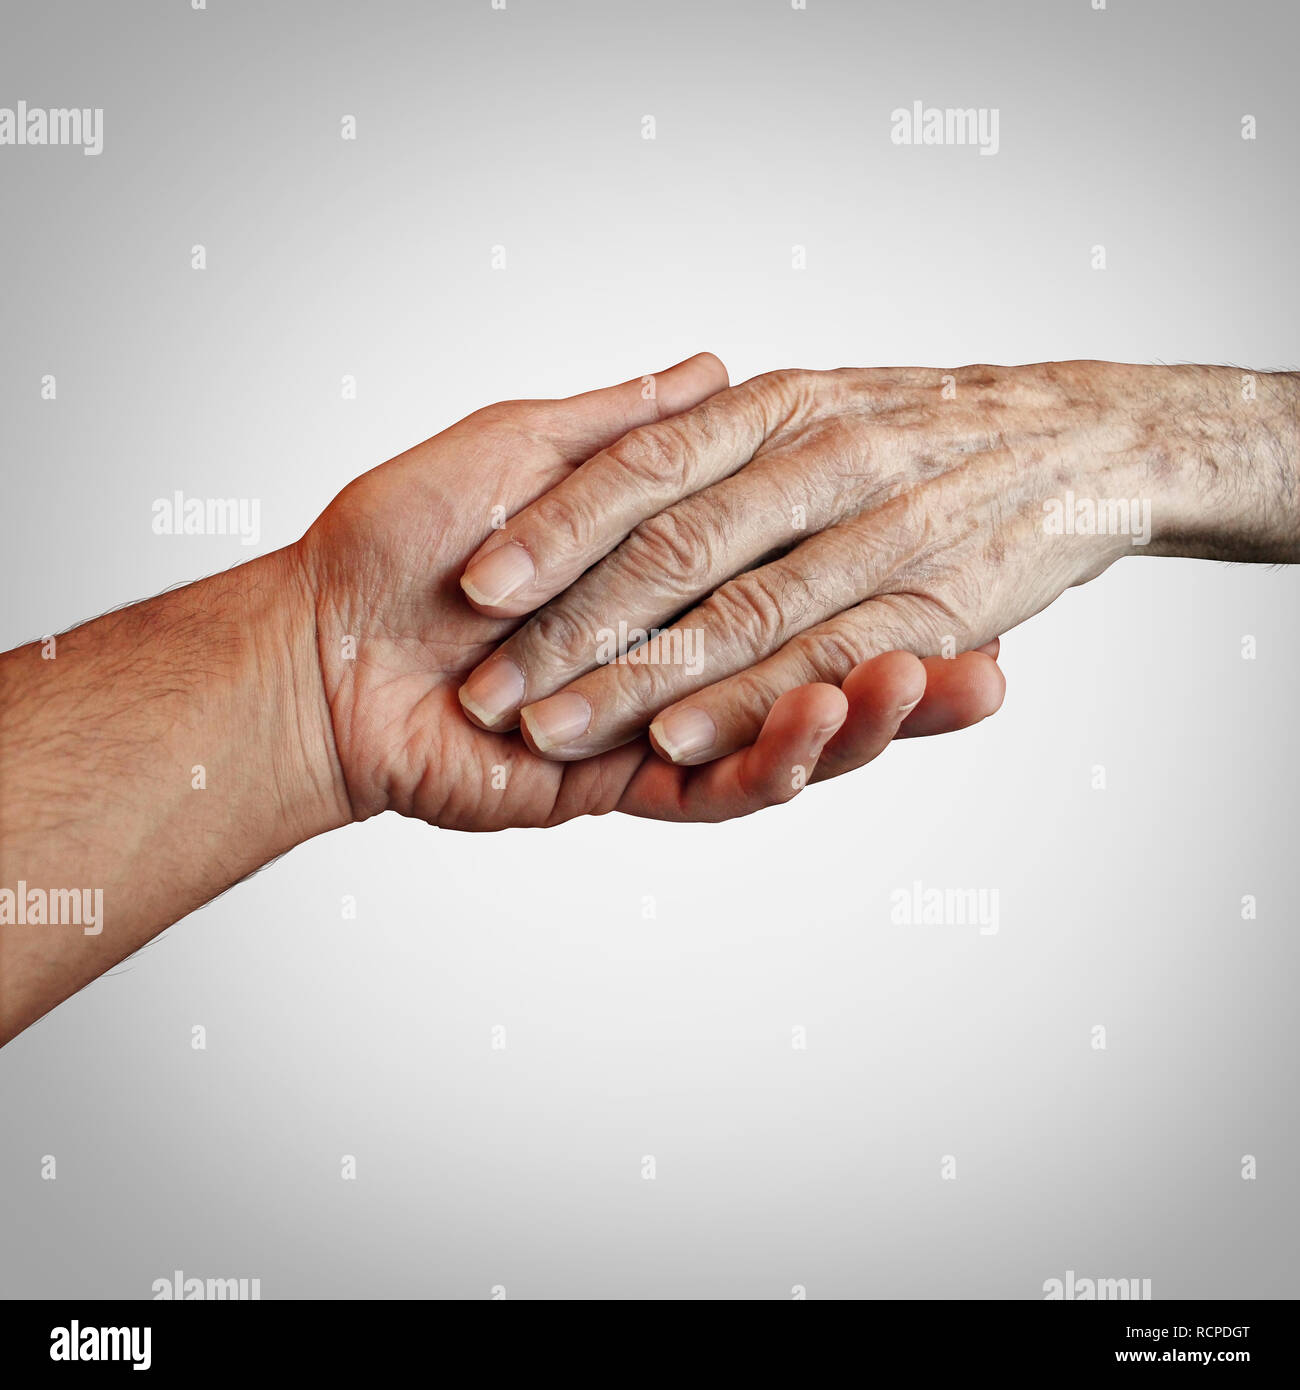 Atención al paciente con Alzheimer o demencia atención domiciliaria de ancianos como cuidador de apoyo proporcionando apoyo al final de su vida útil. Concepto. Foto de stock